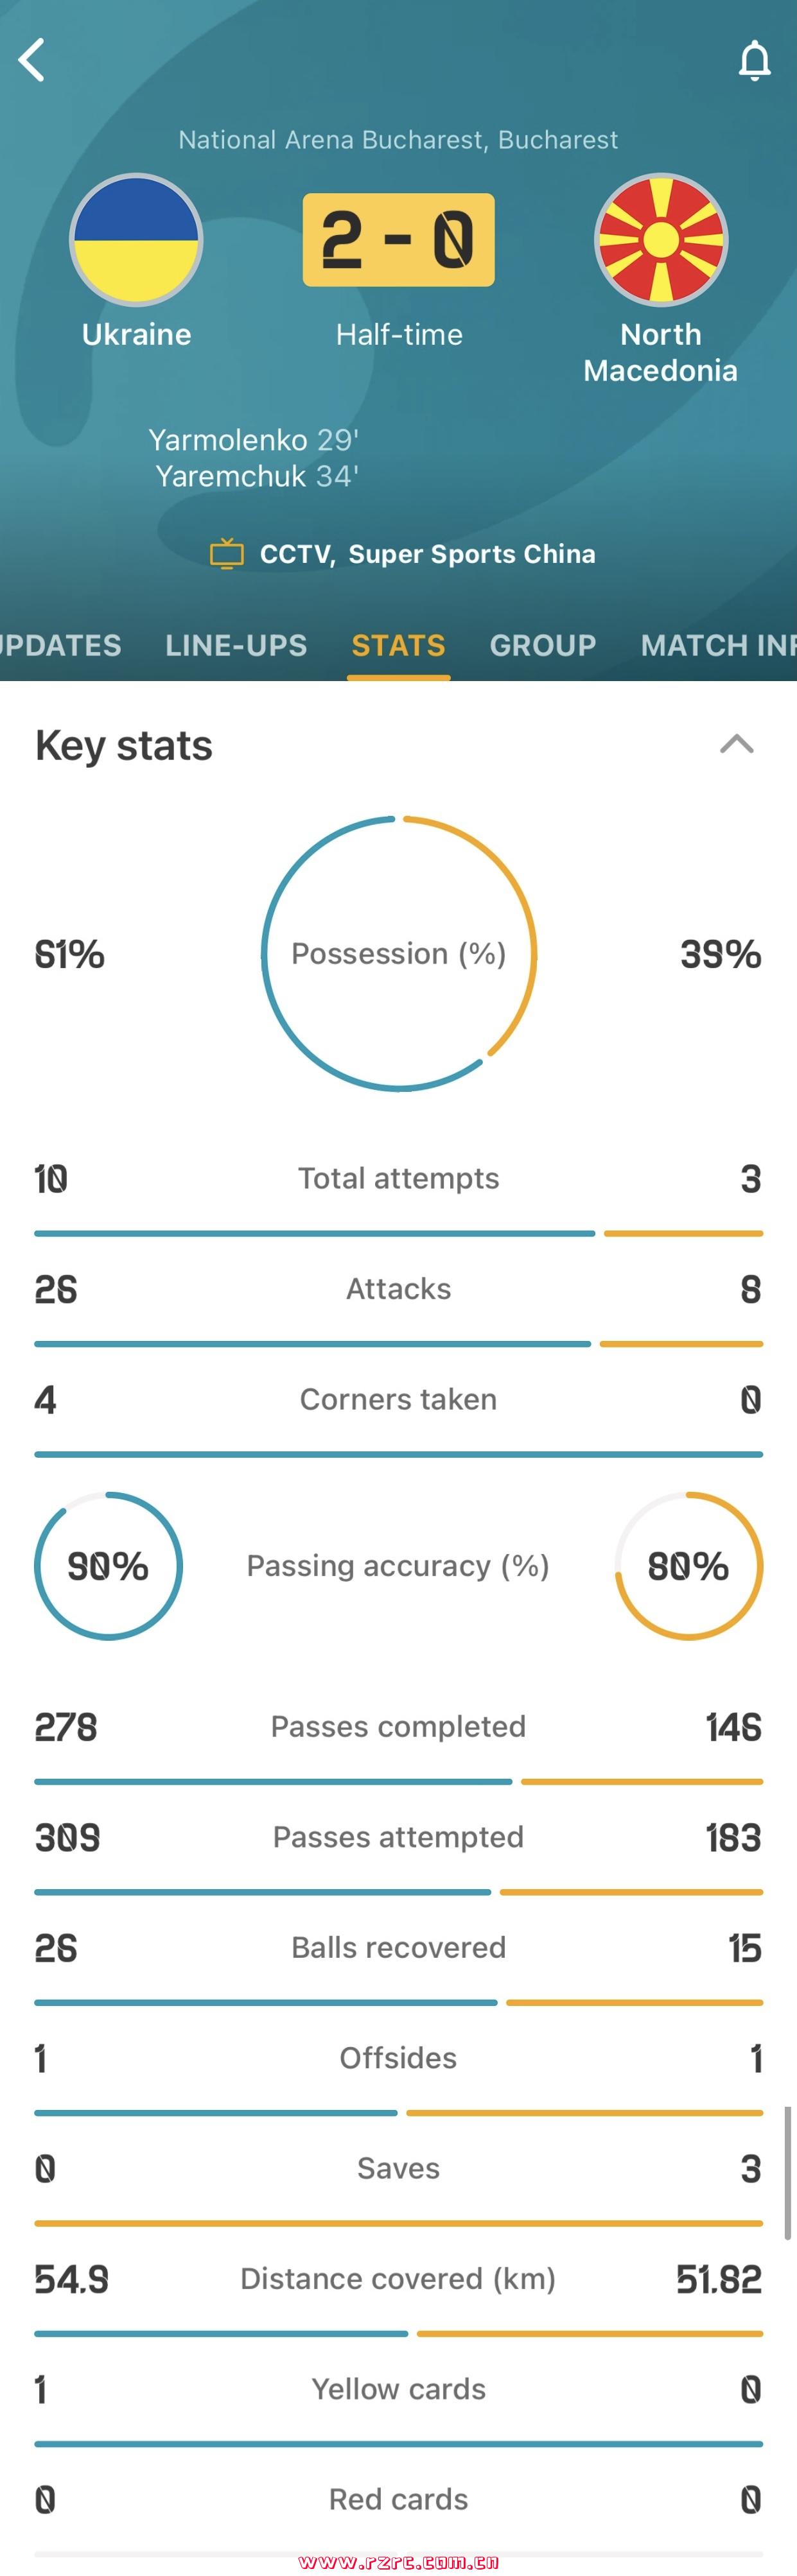 乌克兰vs北马其顿半场数据：控球率 *** 开，射门比10-3